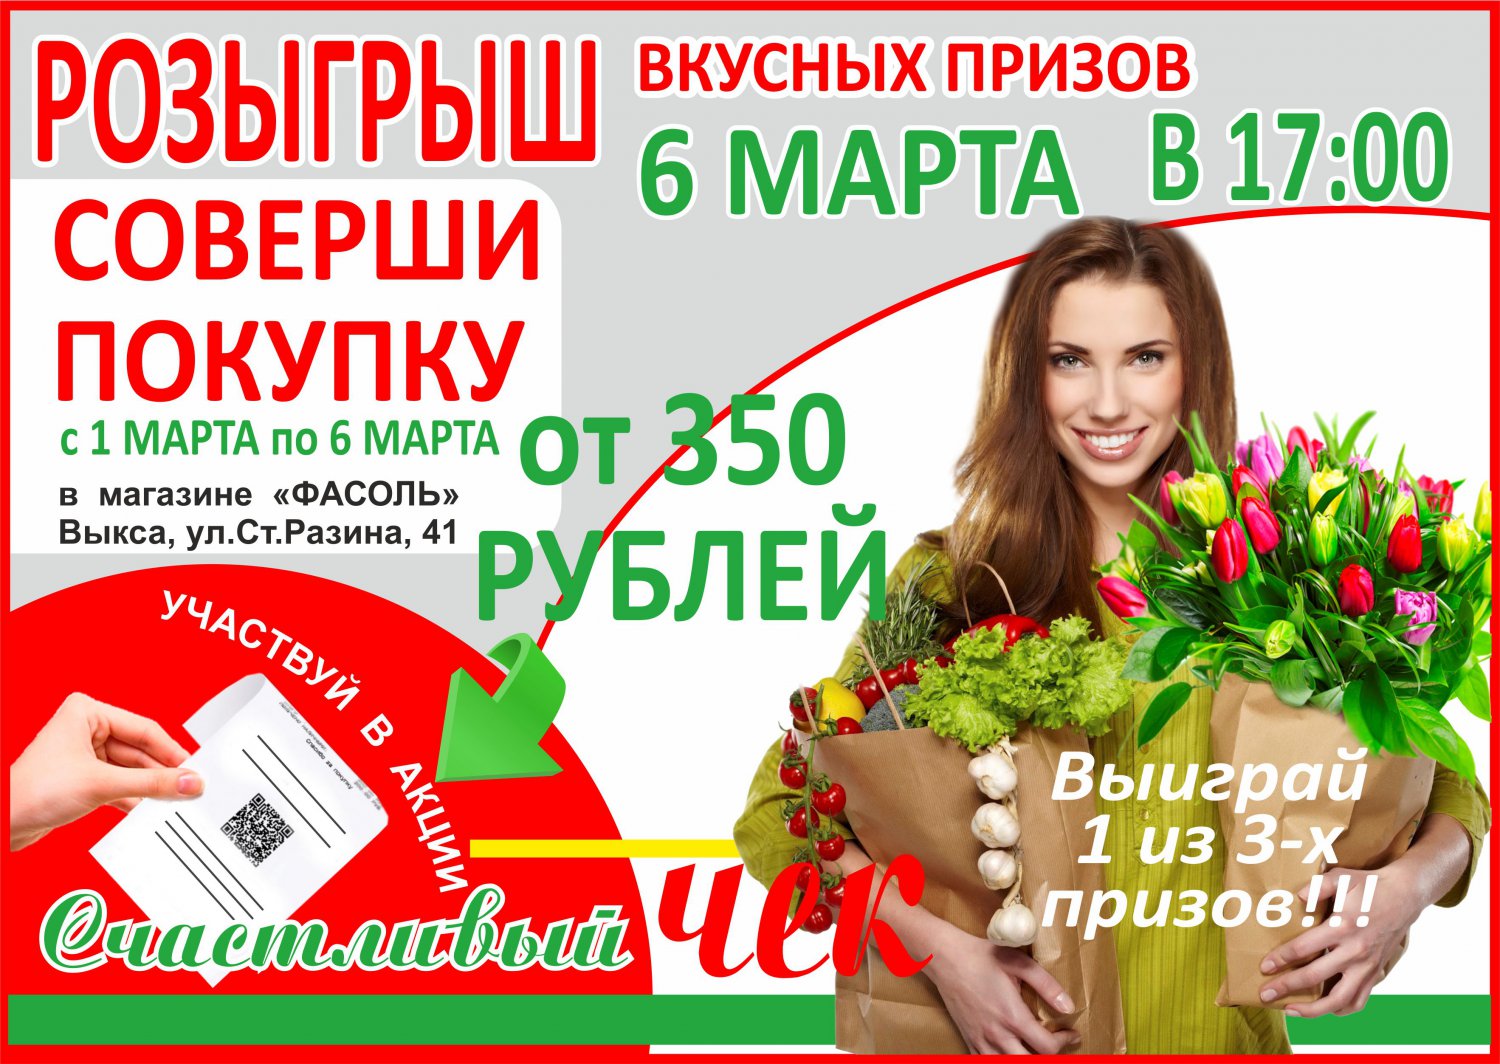 Купи на 350 рублей в магазине «Фасоль» и выиграй призы